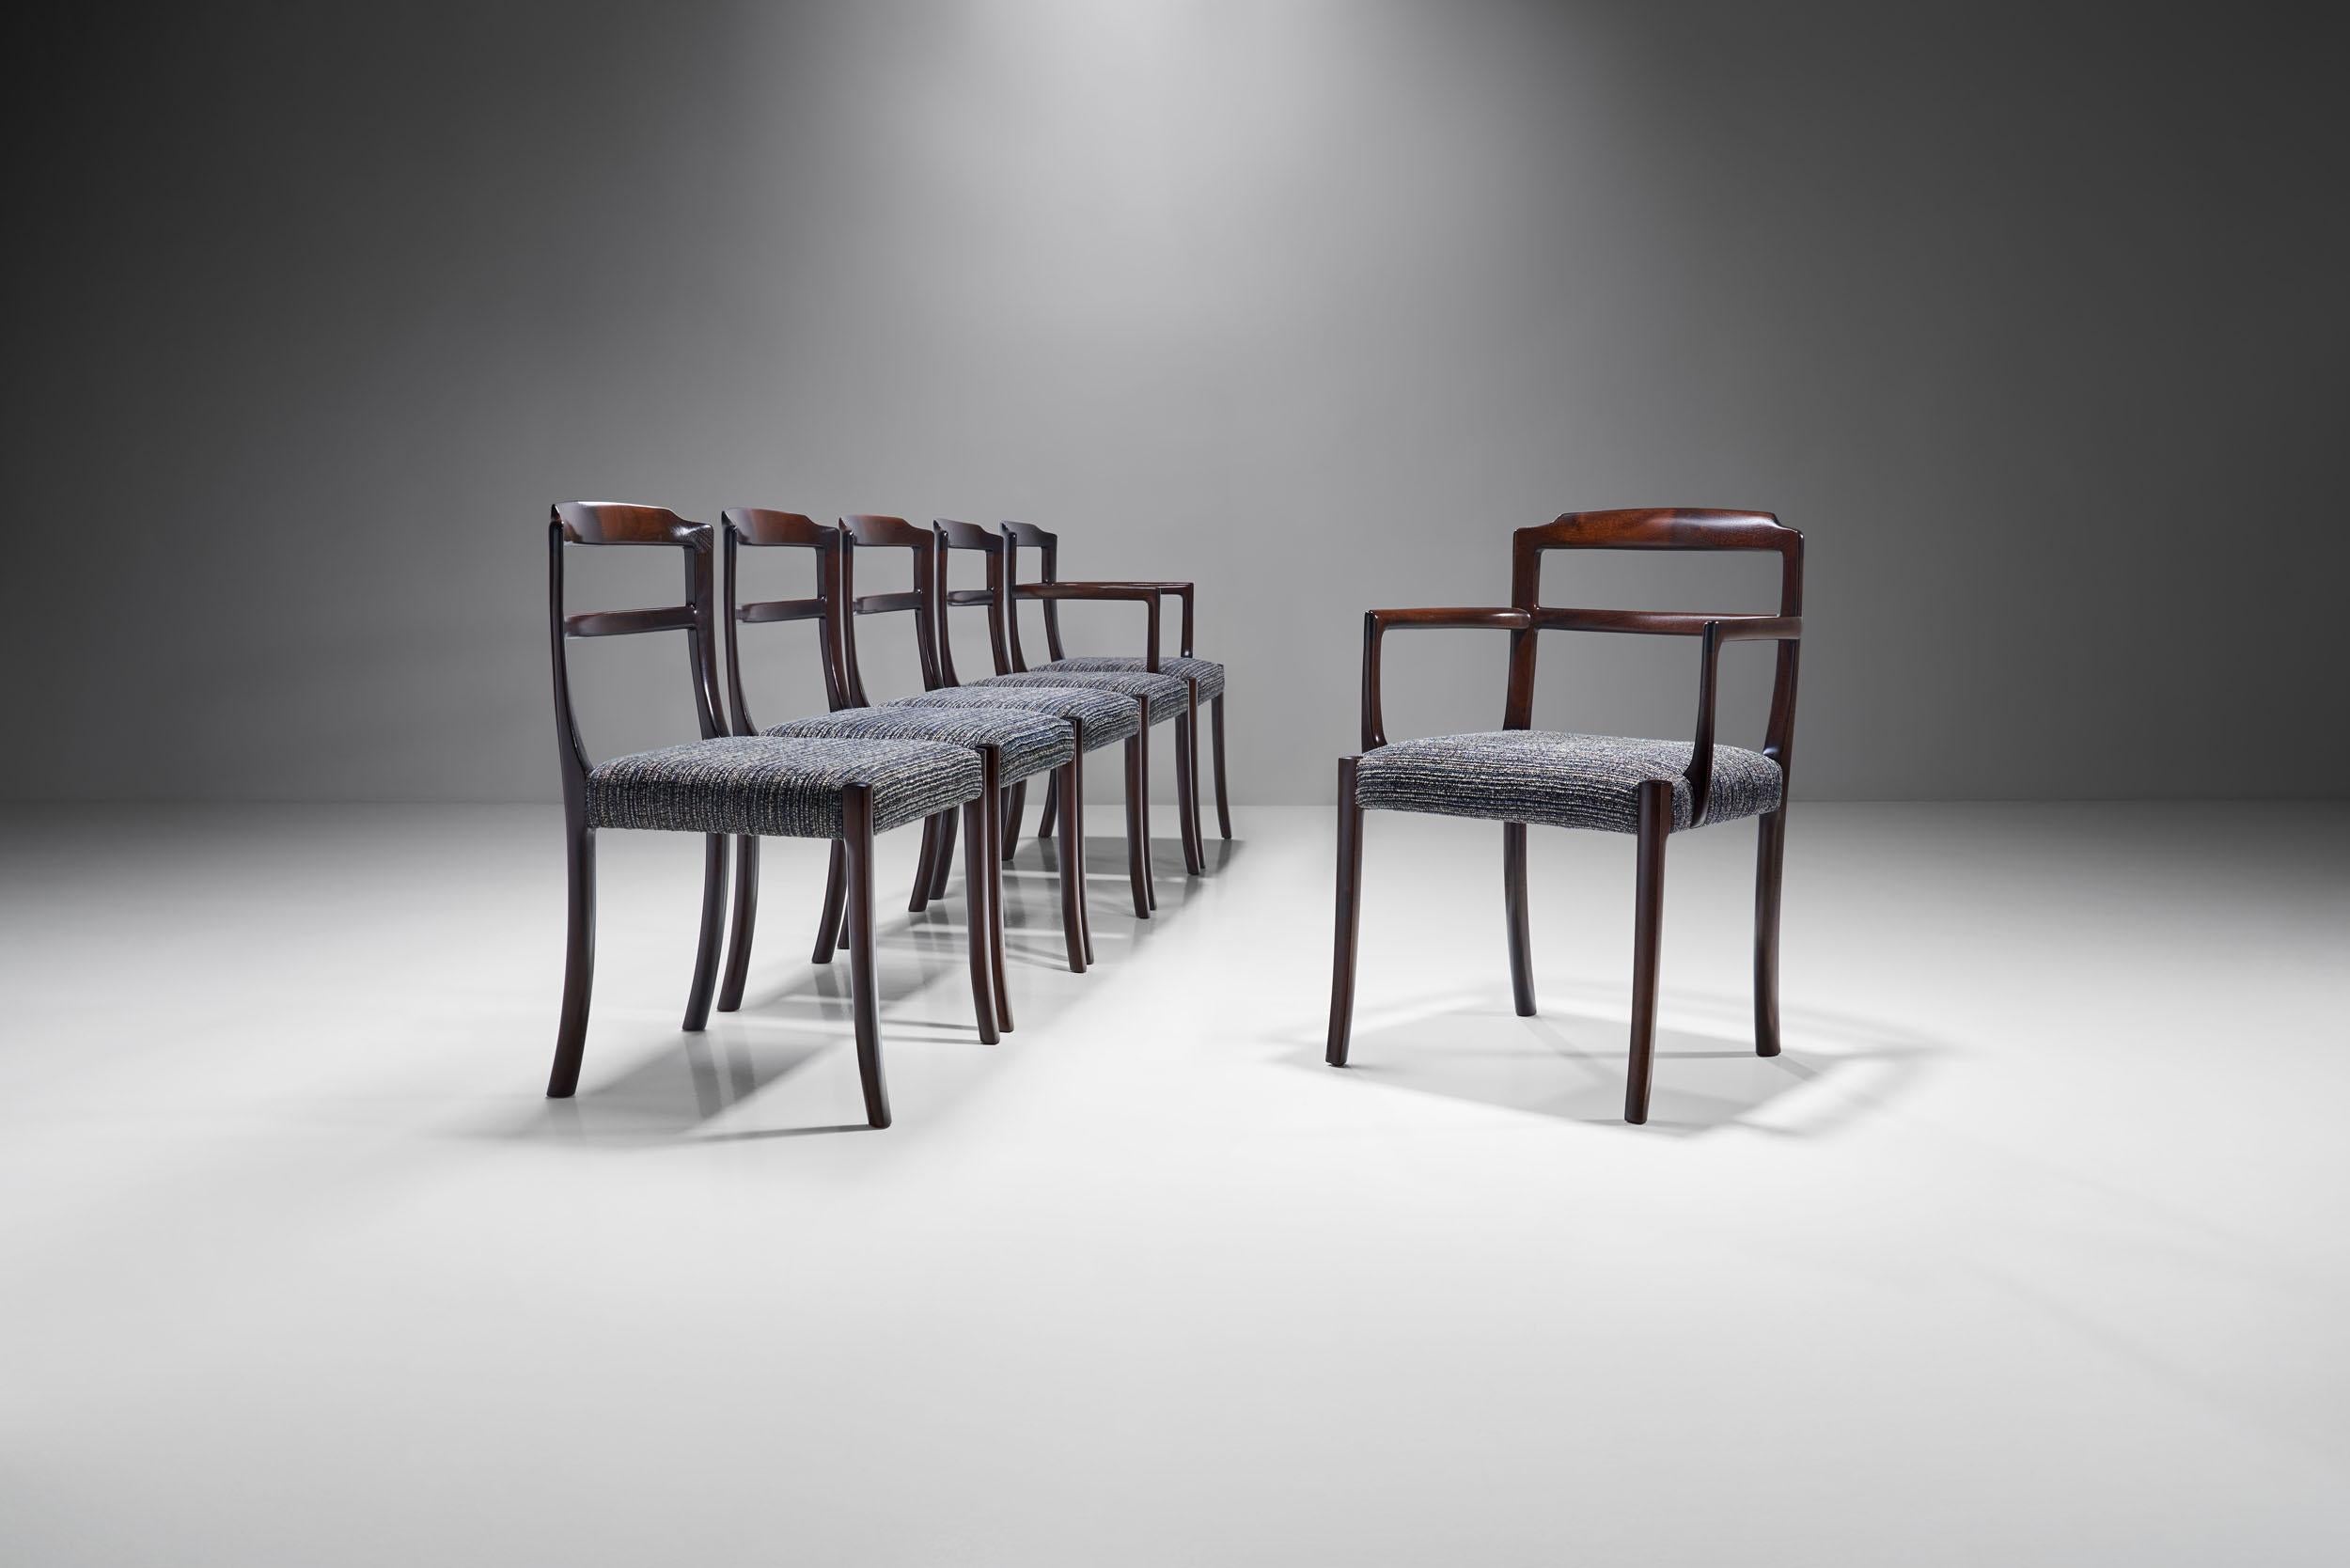 Cet ensemble de chaises de salle à manger du designer danois Ole Wanscher présente des pieds évasés distinctifs et une fine menuiserie apparente à l'arrière. Le design est honnête et simple avec une technique et des matériaux raffinés qui font de